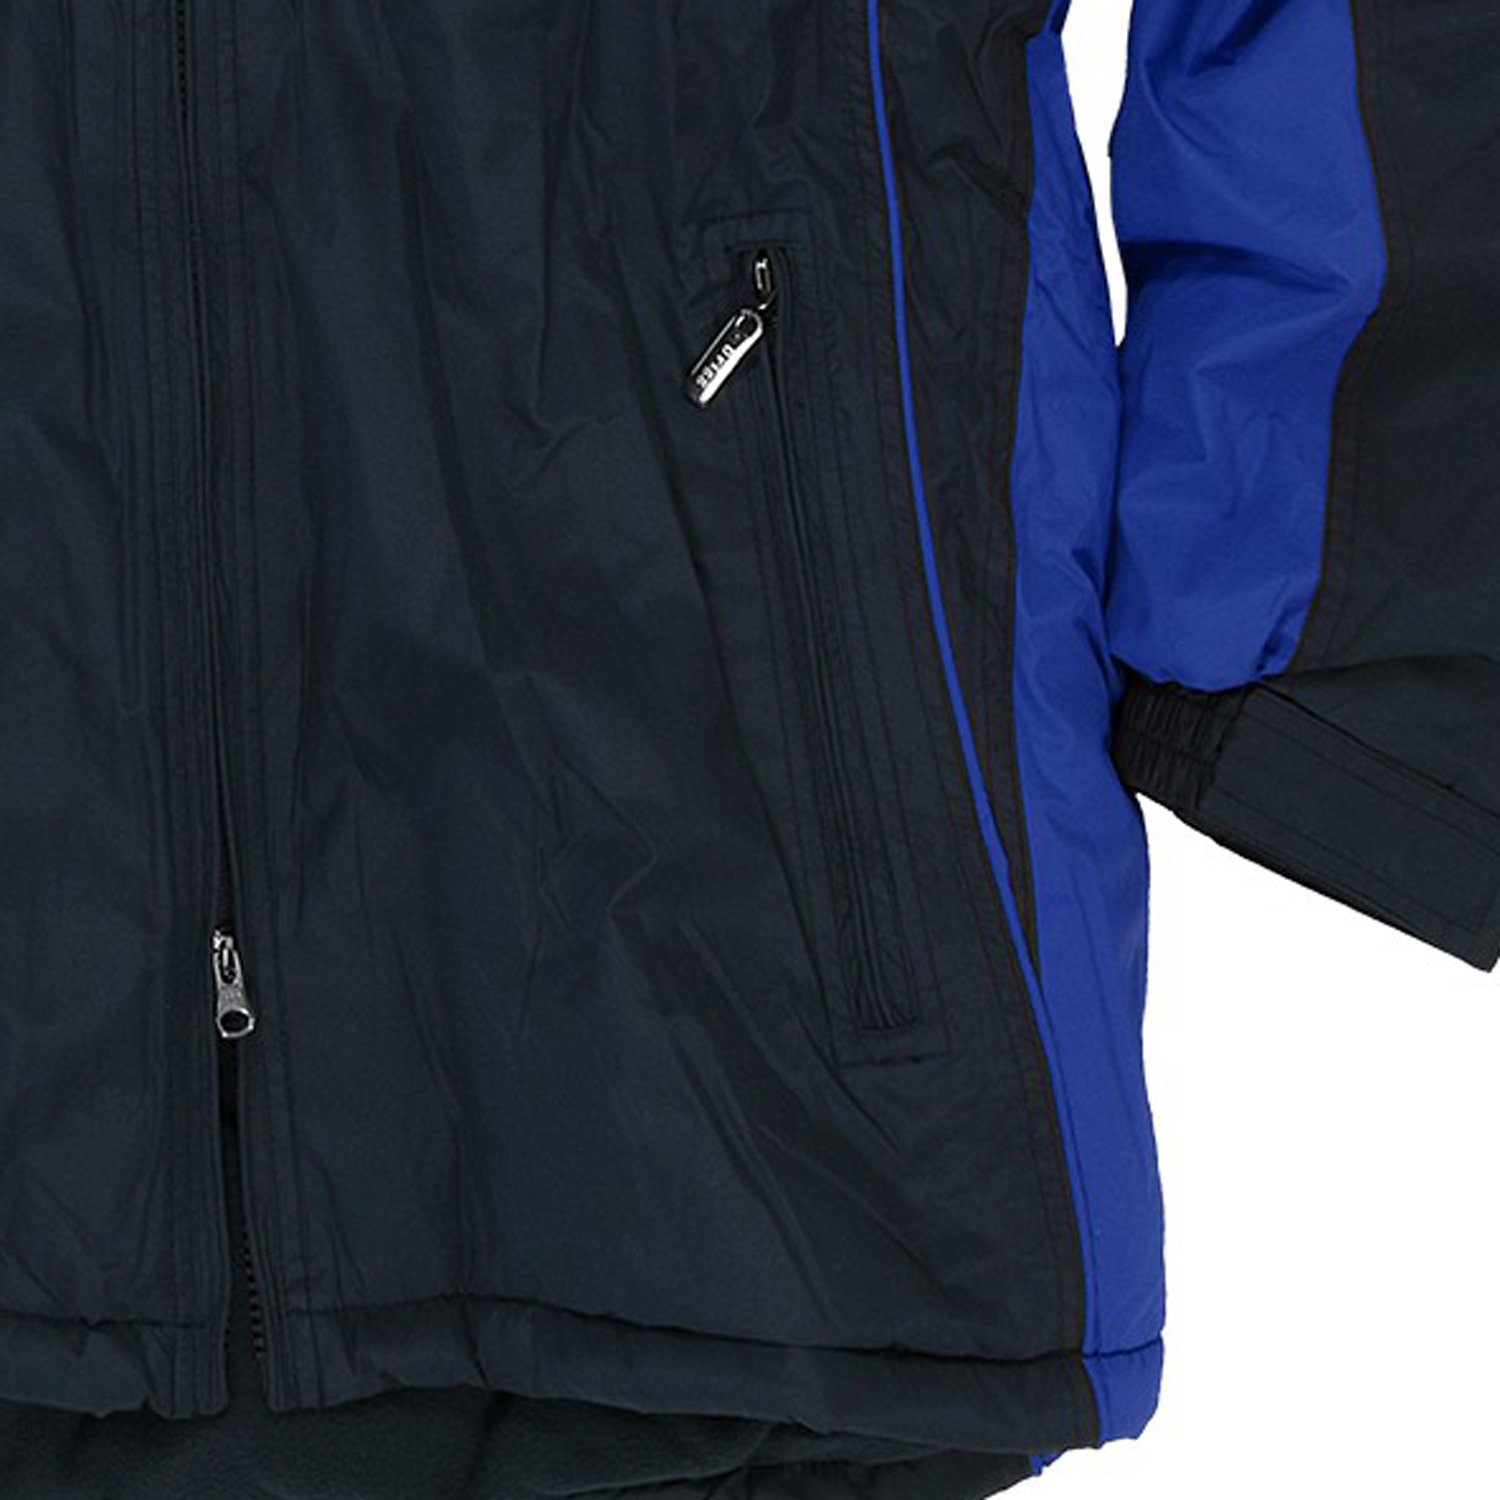 Wasserdichte Jacke in Übergrößen, dunkelblau-royalblau von Brigg bis 14XL